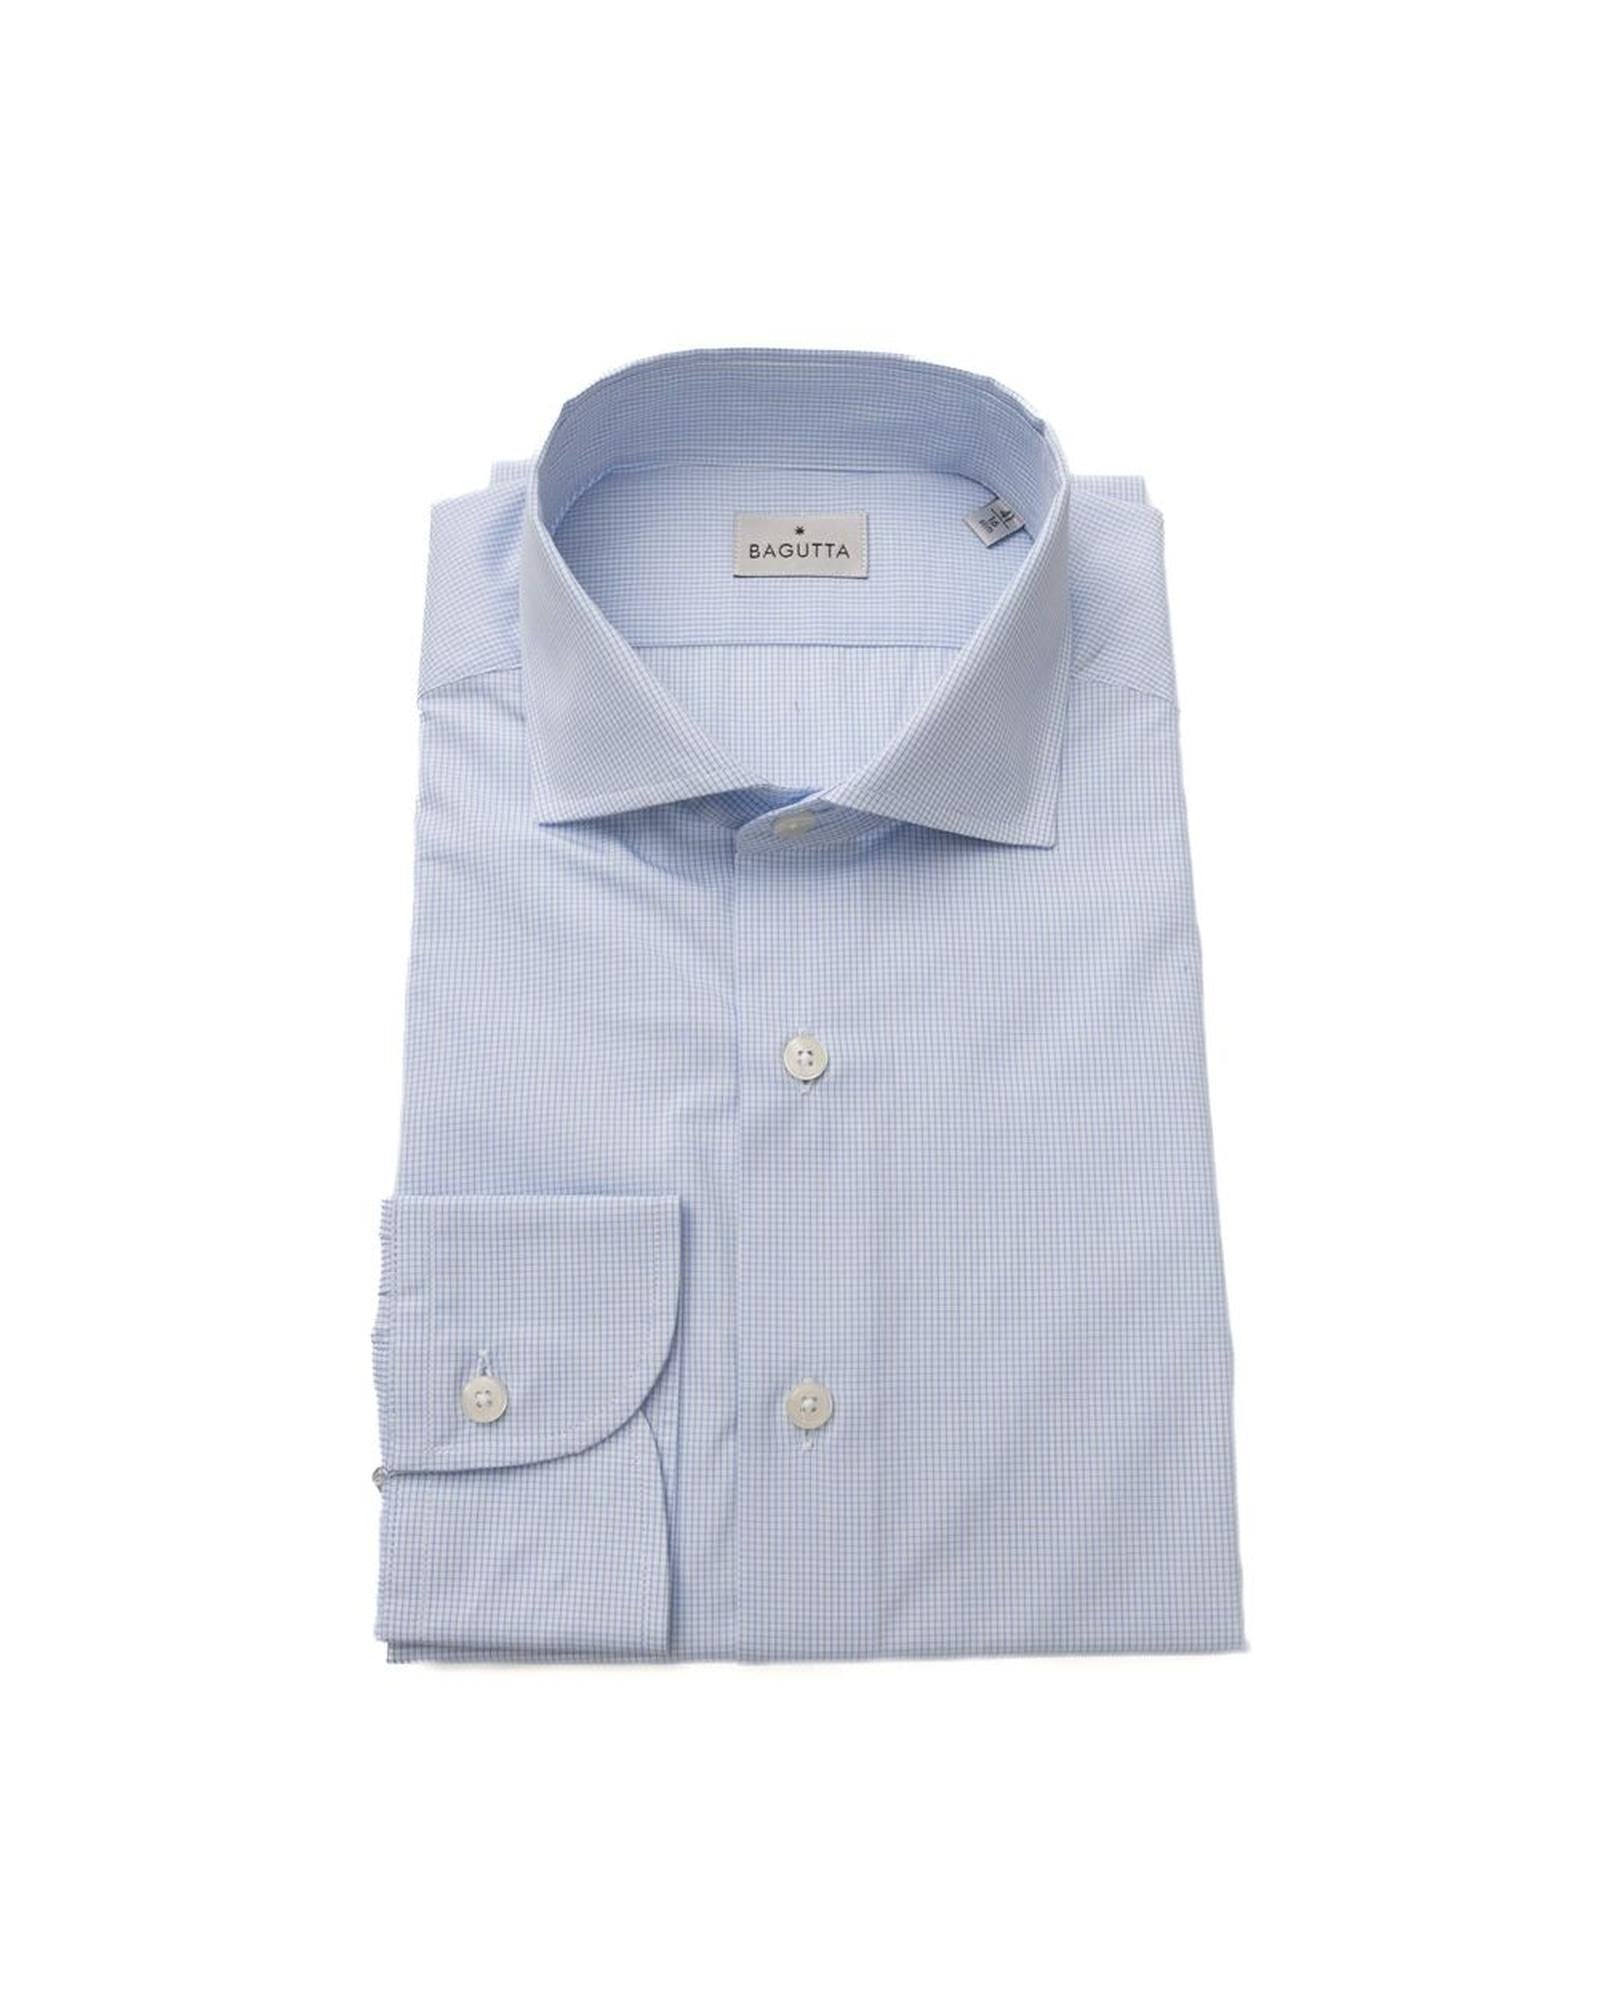 Men's Light Blue Cotton Shirt - L